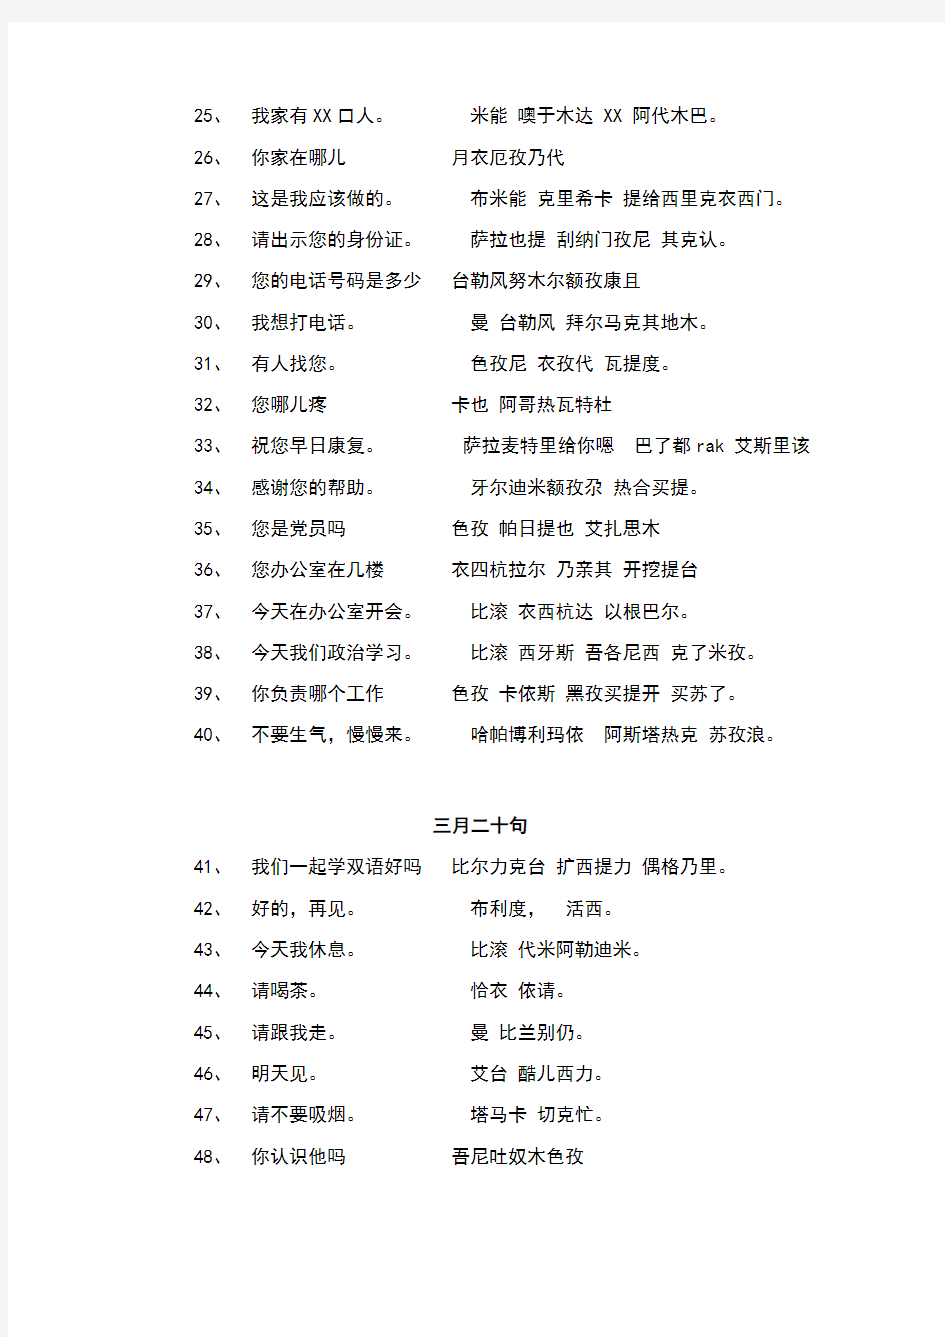 汉维语对照表及日常用语大全